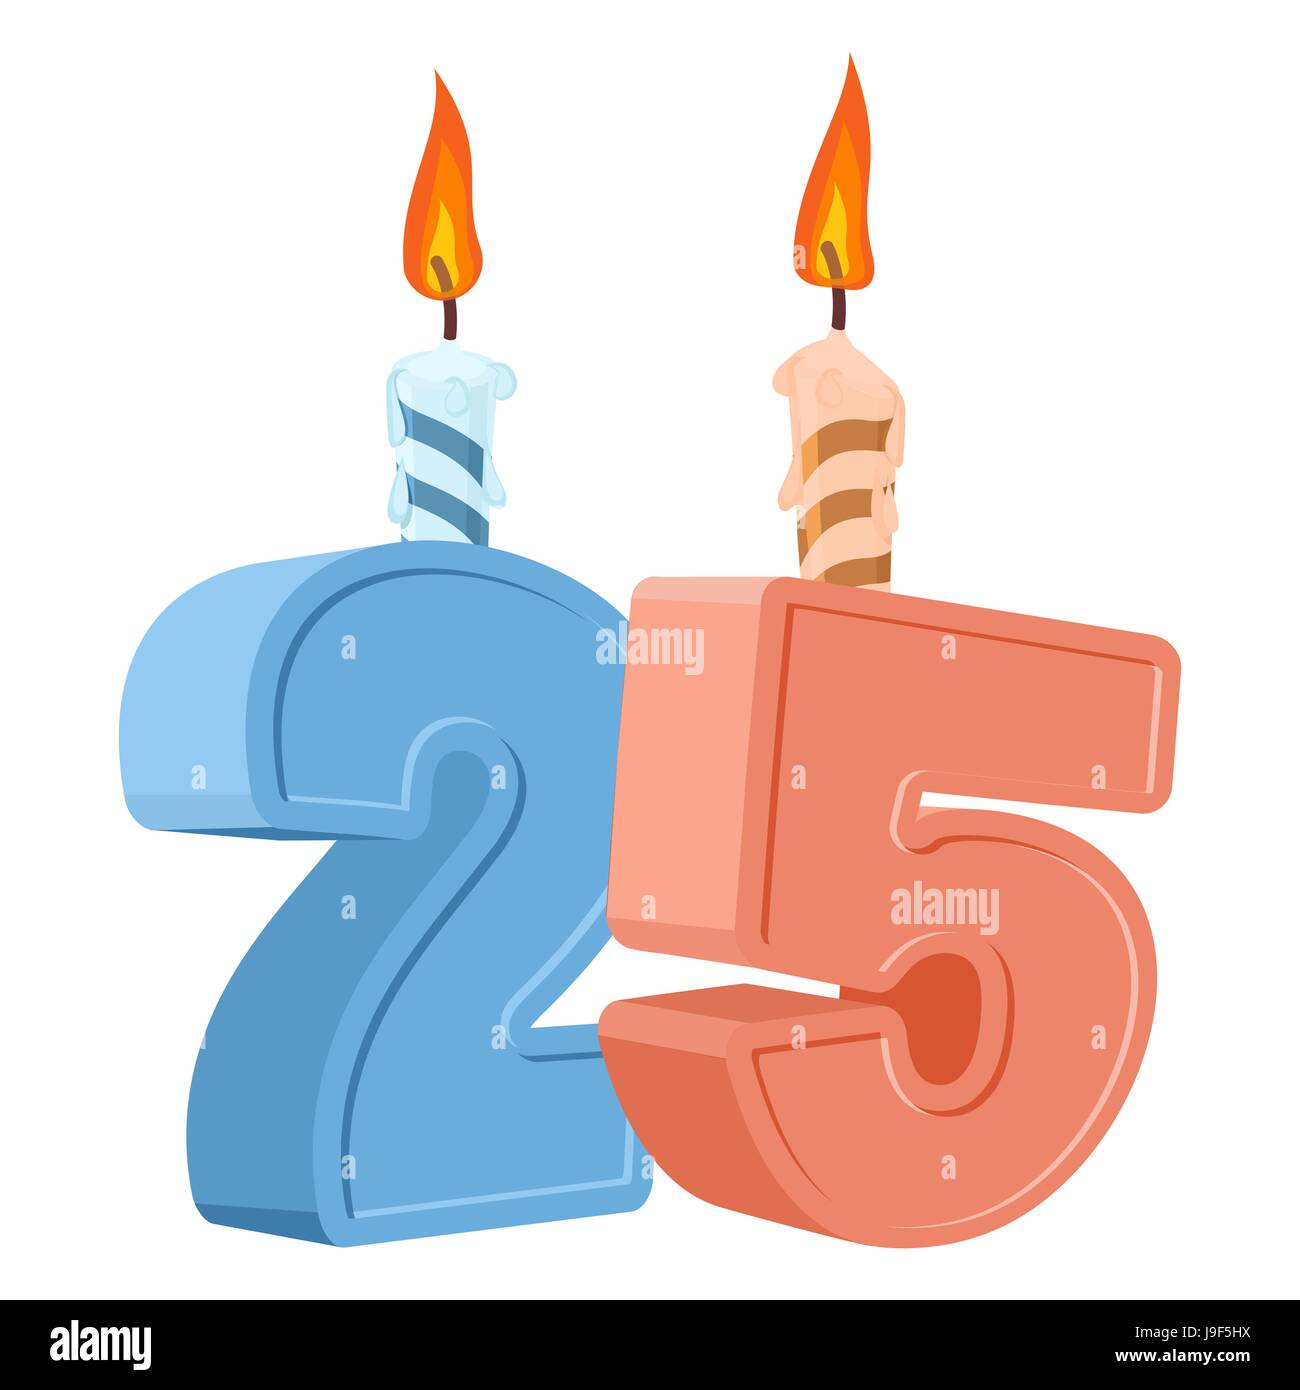 25 Jahre Geburtstag. Anzahl mit festliche Kerze für Urlaub Kuchen. 25 Jubiläum Stock Vektor